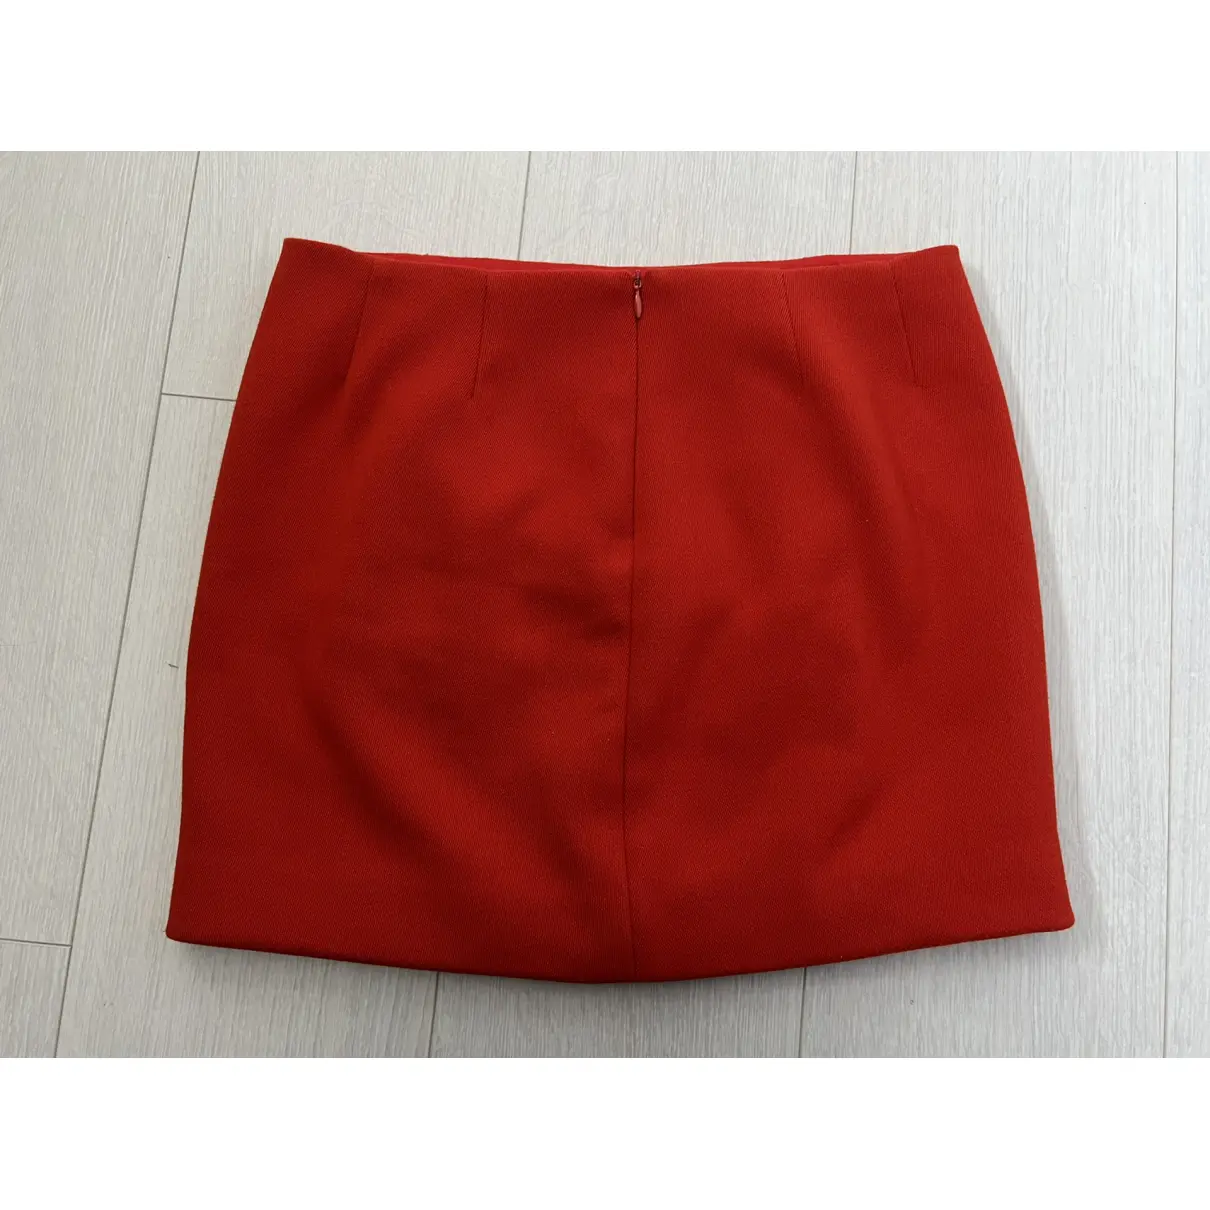 Buy Maje Spring Summer 2020 mini skirt online